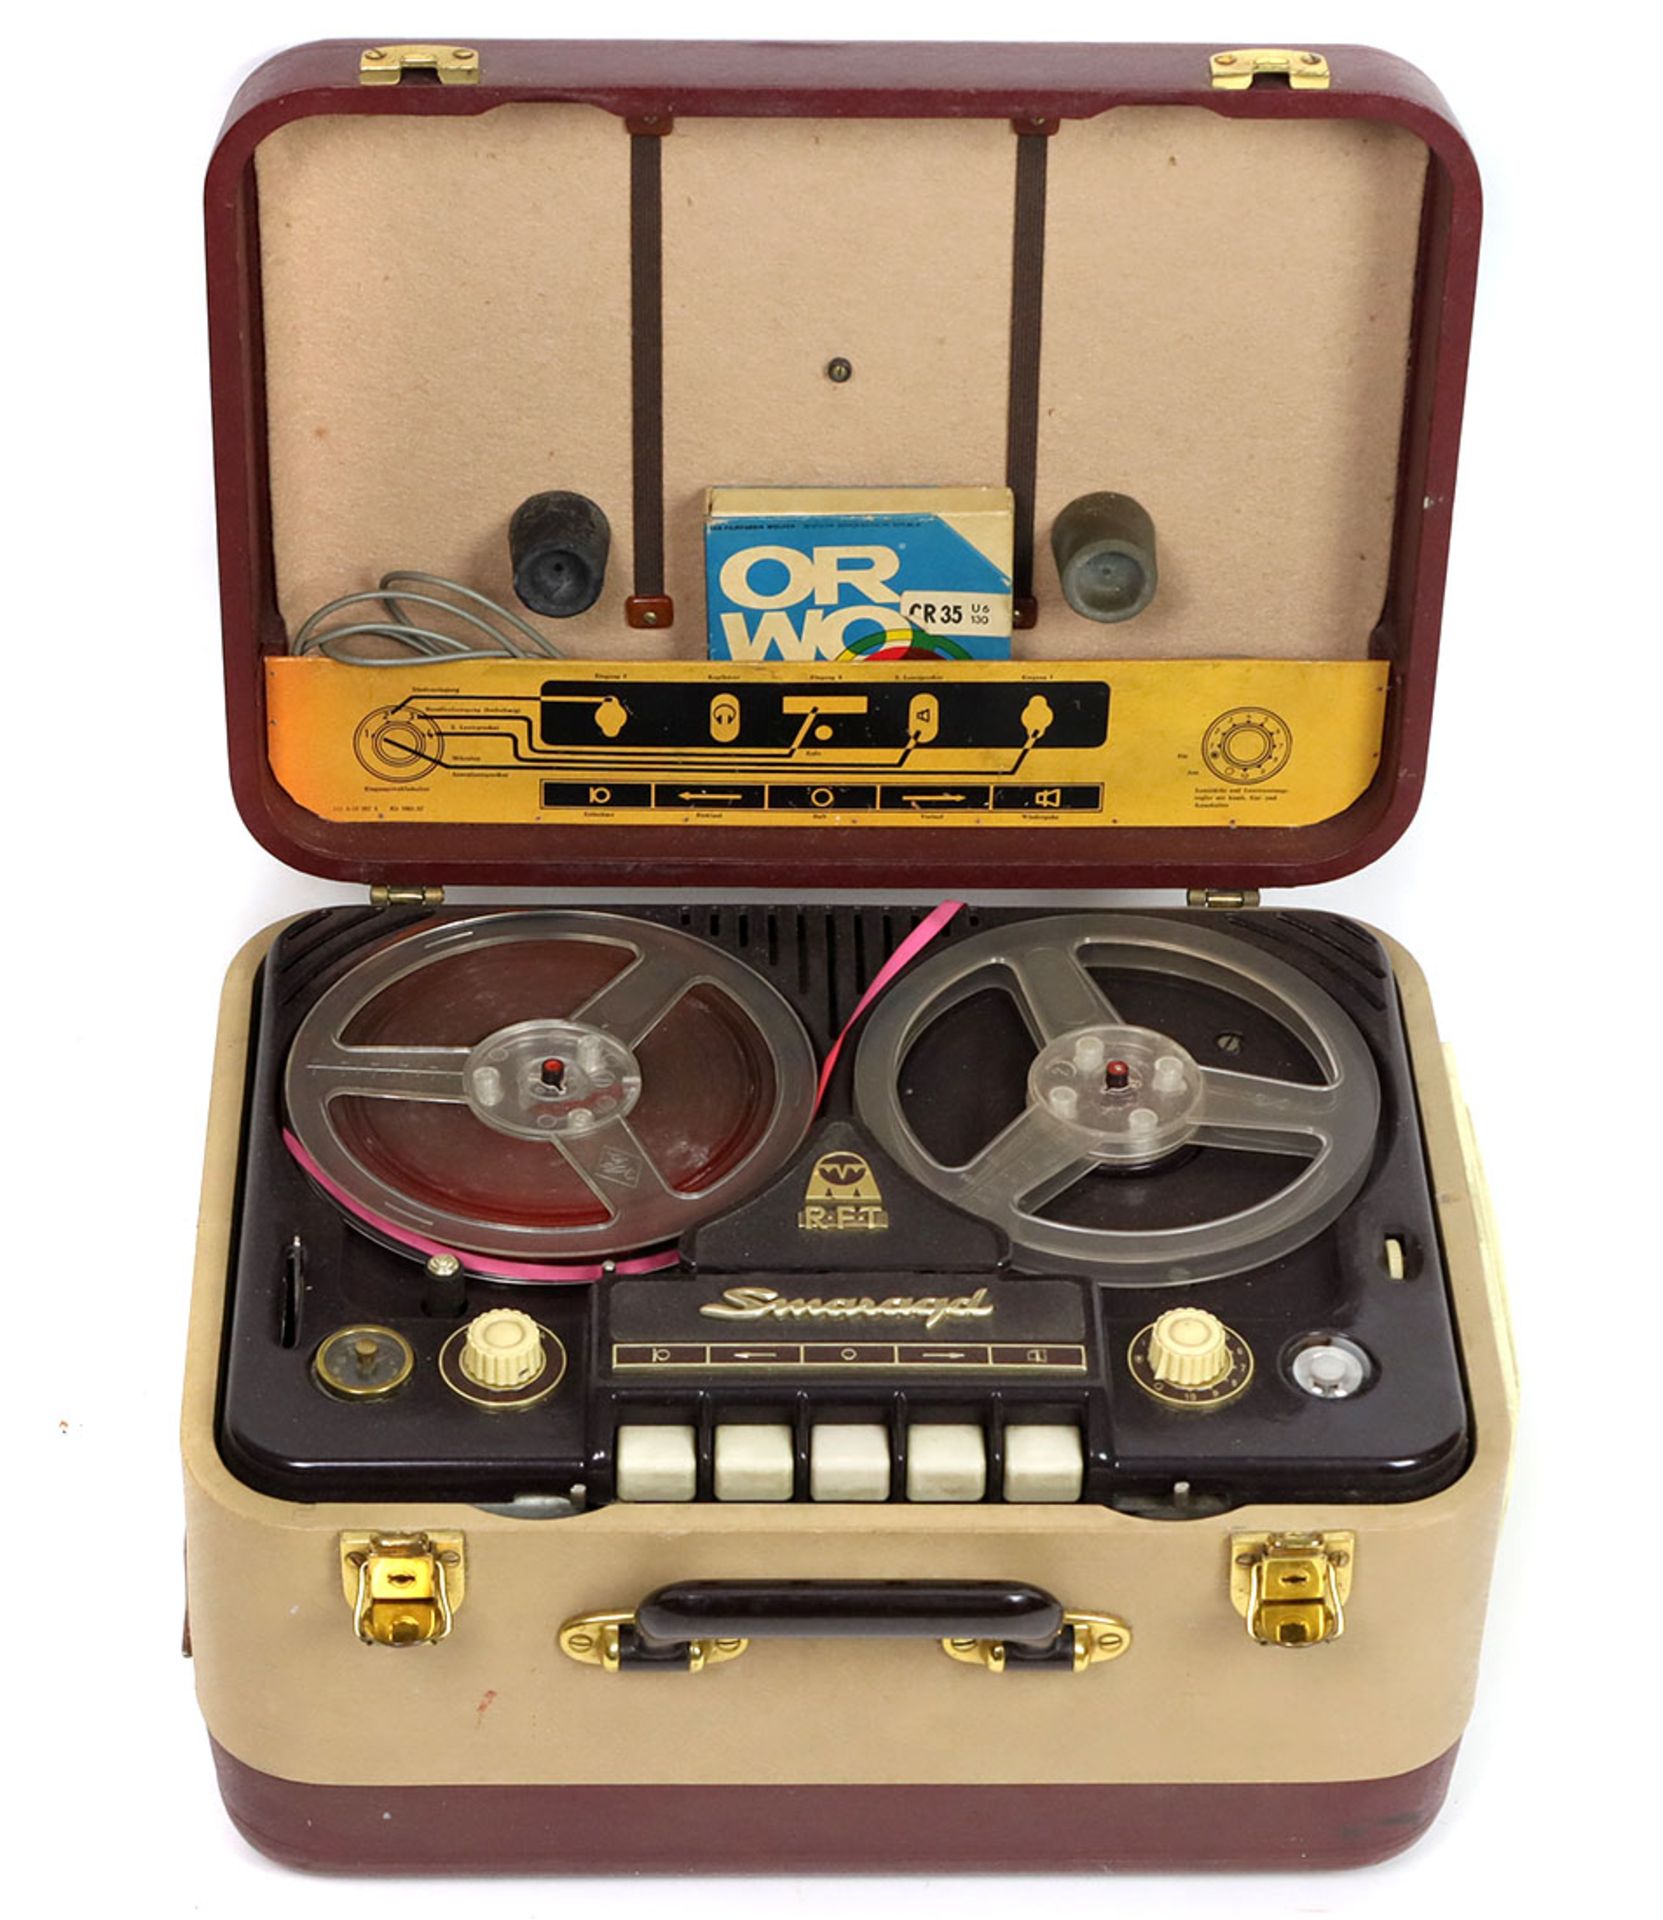 Tonbandgerät RFT SmaragdDoppelspur Tonbandgerät, es verfügt über eine Zähluhr, Ausgänge für